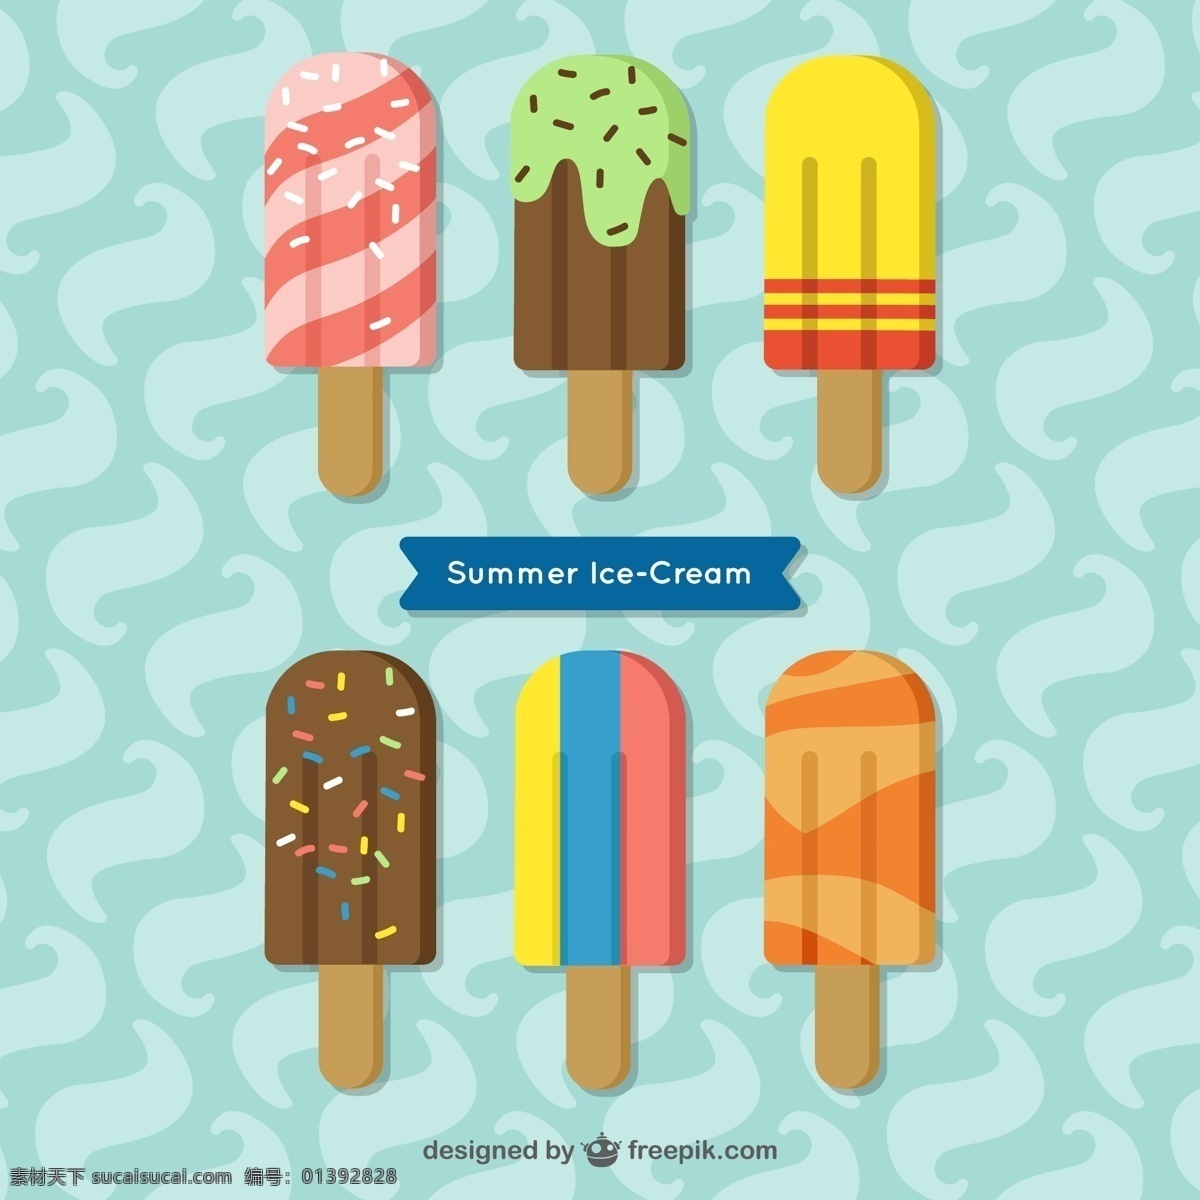 夏天 平板 冰淇淋 收藏 食品 平 冰 甜 色彩 平面设计 甜点 奶油 饮食 季节 美味 收集 味道 晶片 冷却 青色 天蓝色